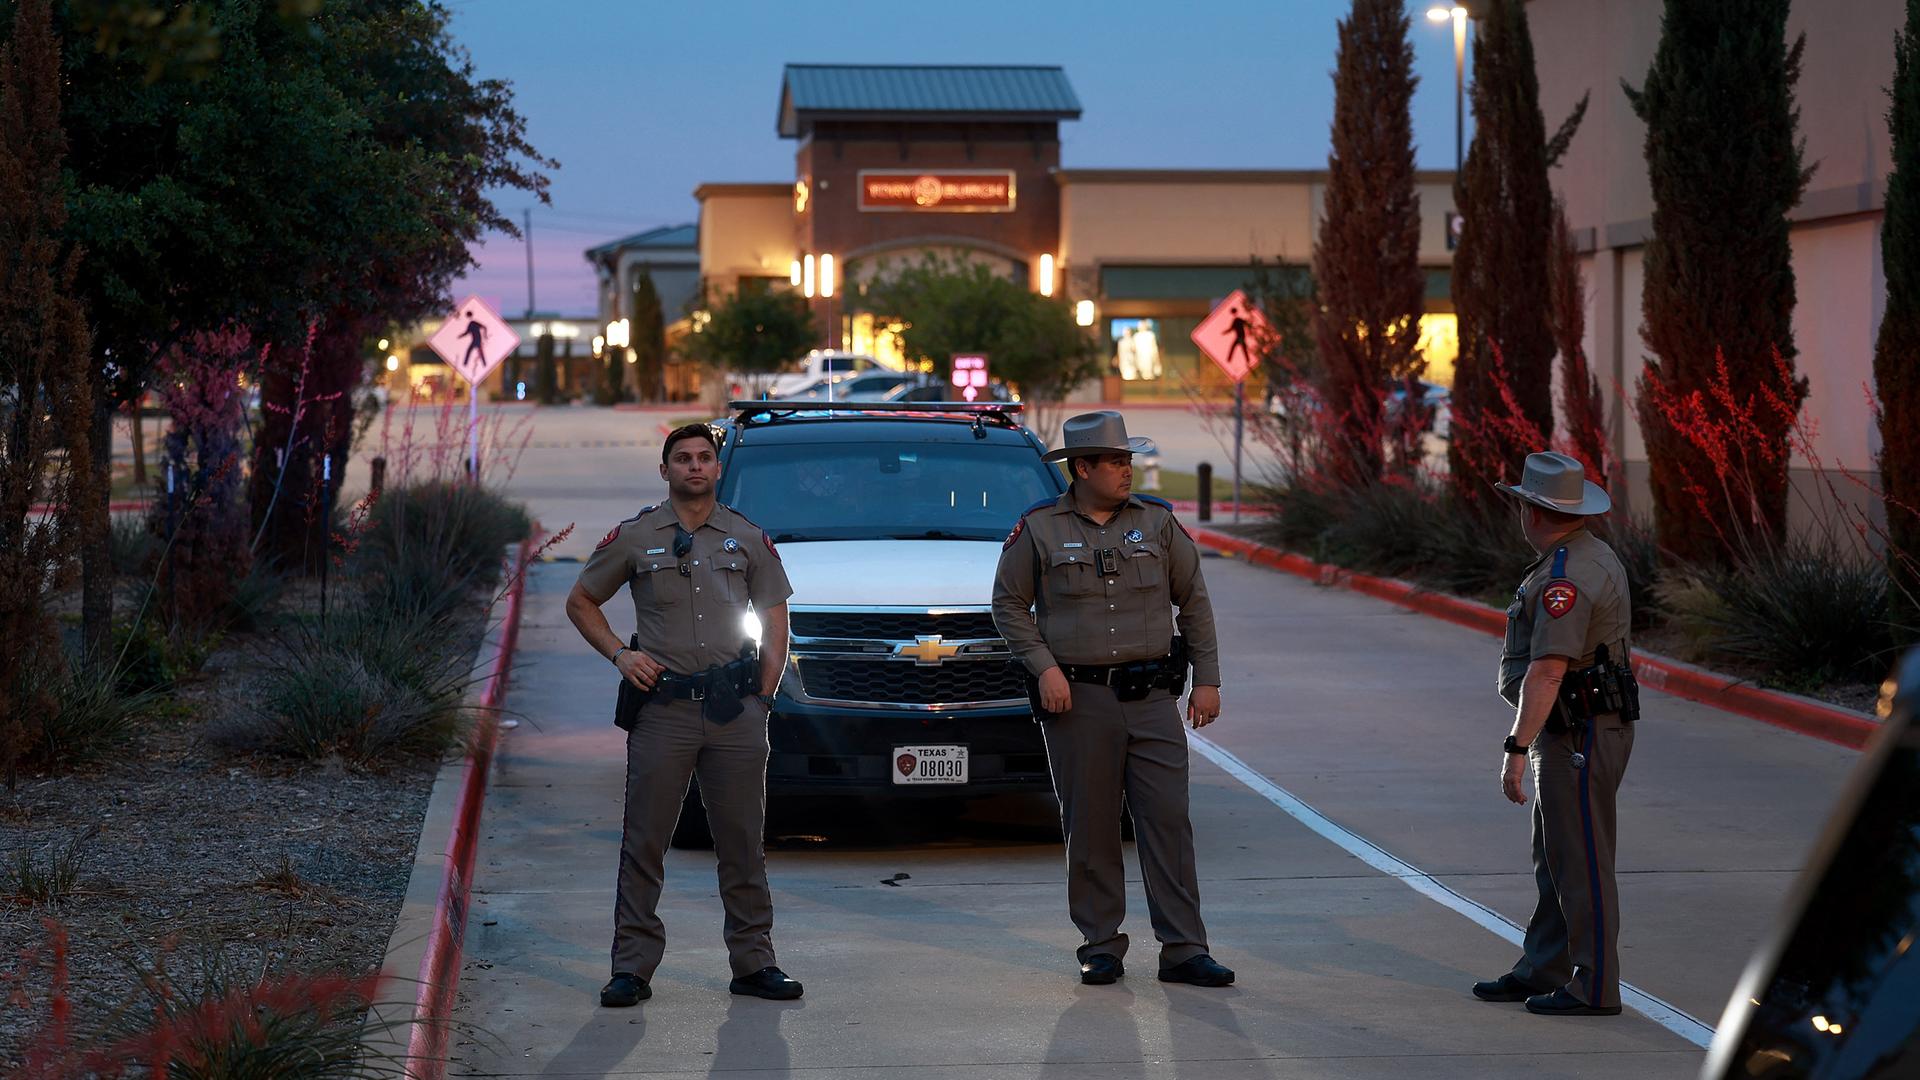 Drei US-Polizeibeamte stehen vor einem Dienstwagen und blockieren damit den eingang des Einkaufszentrums.